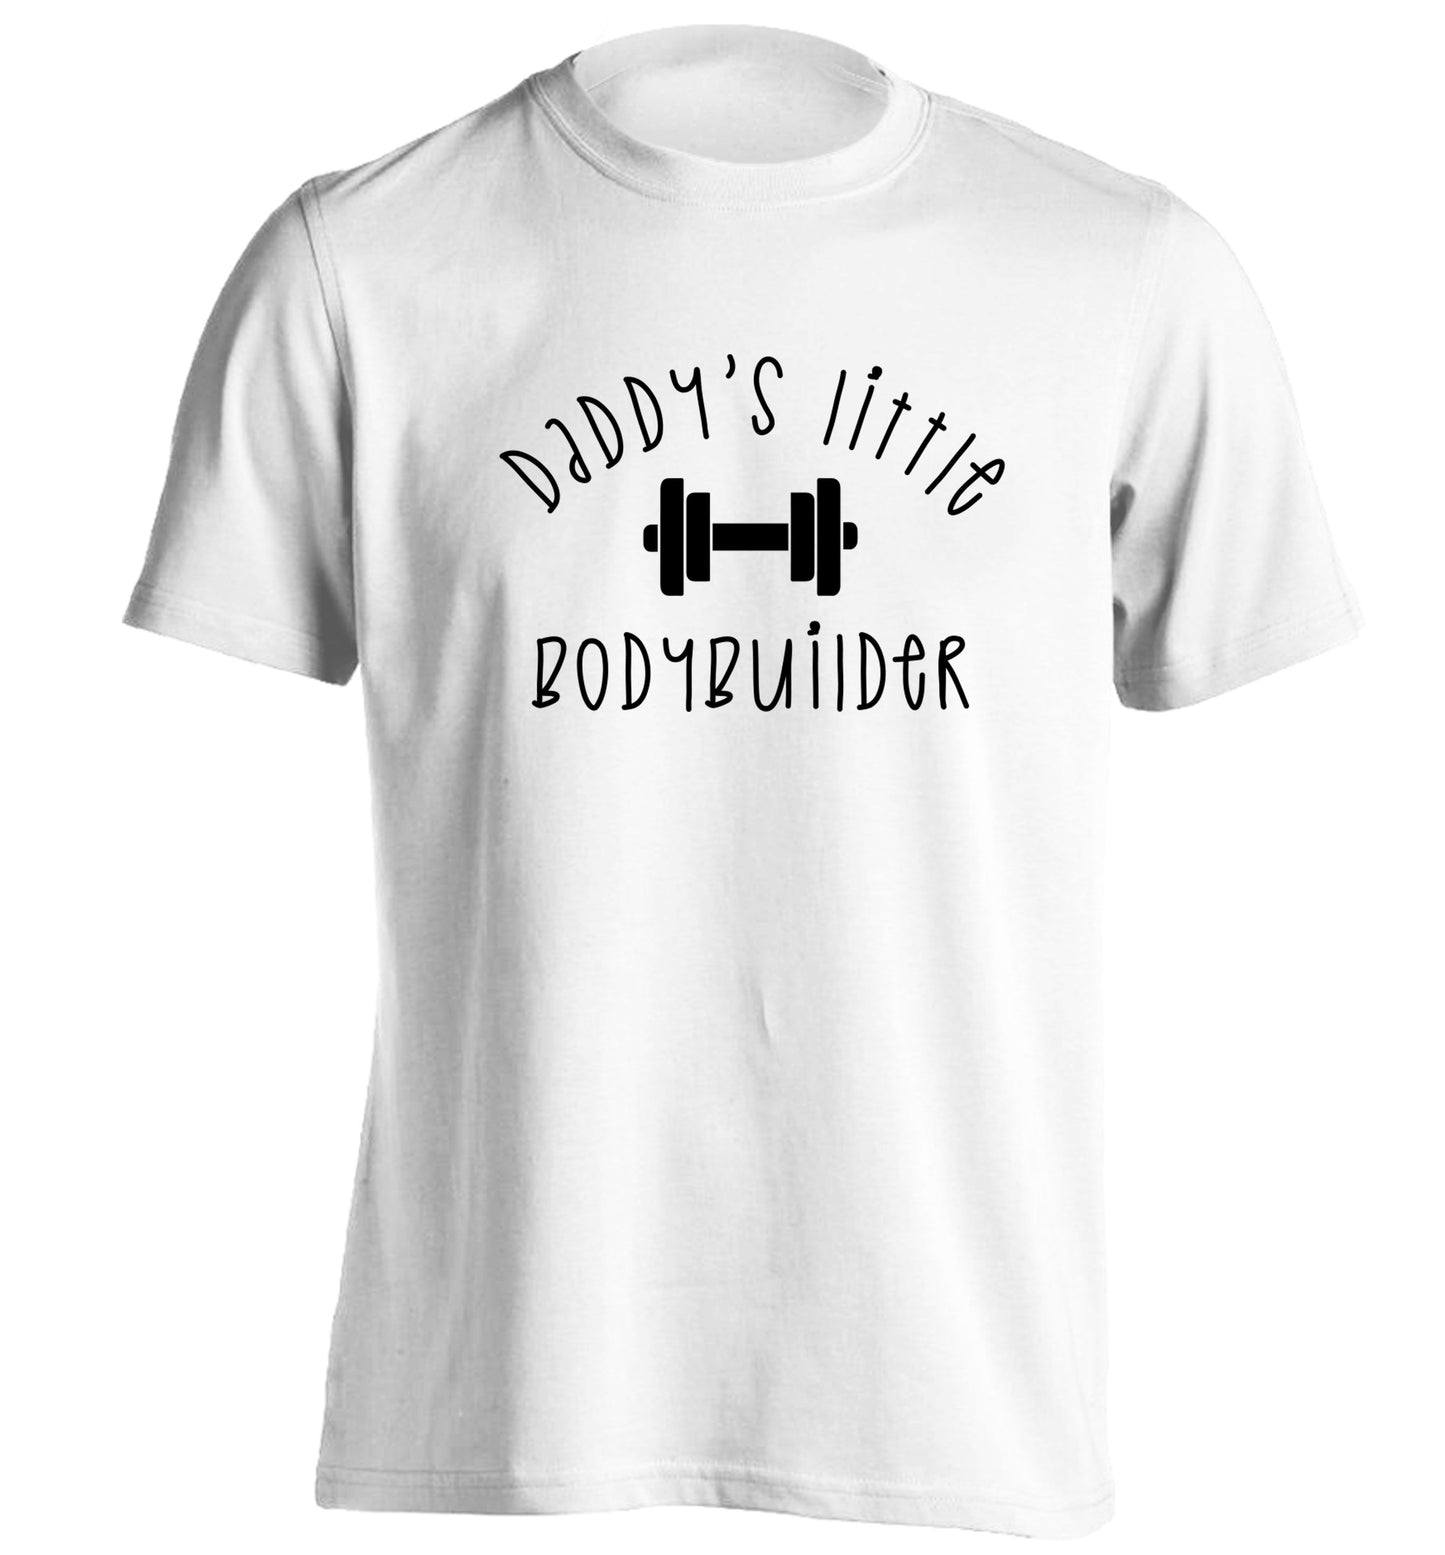 Daddy's little bodybuilder adults unisex white Tshirt 2XL